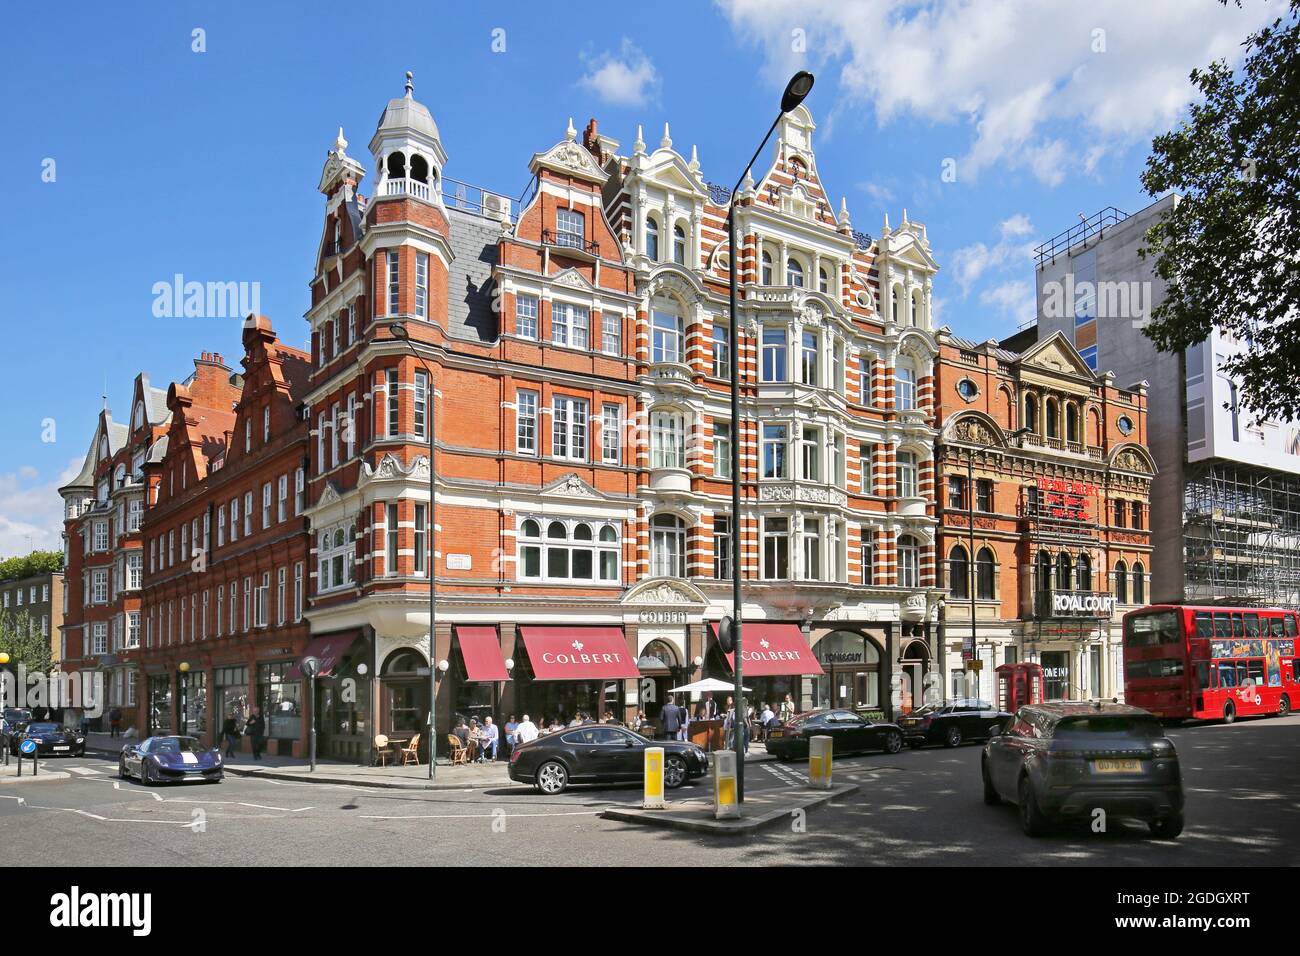 Sloane Square, Chelsea, London, Großbritannien. Zeigt das Colbert Building (Mitte) und das Royal Court Theatre (rechts). Bekannt als Londons wohlhabendstes Viertel. Stockfoto